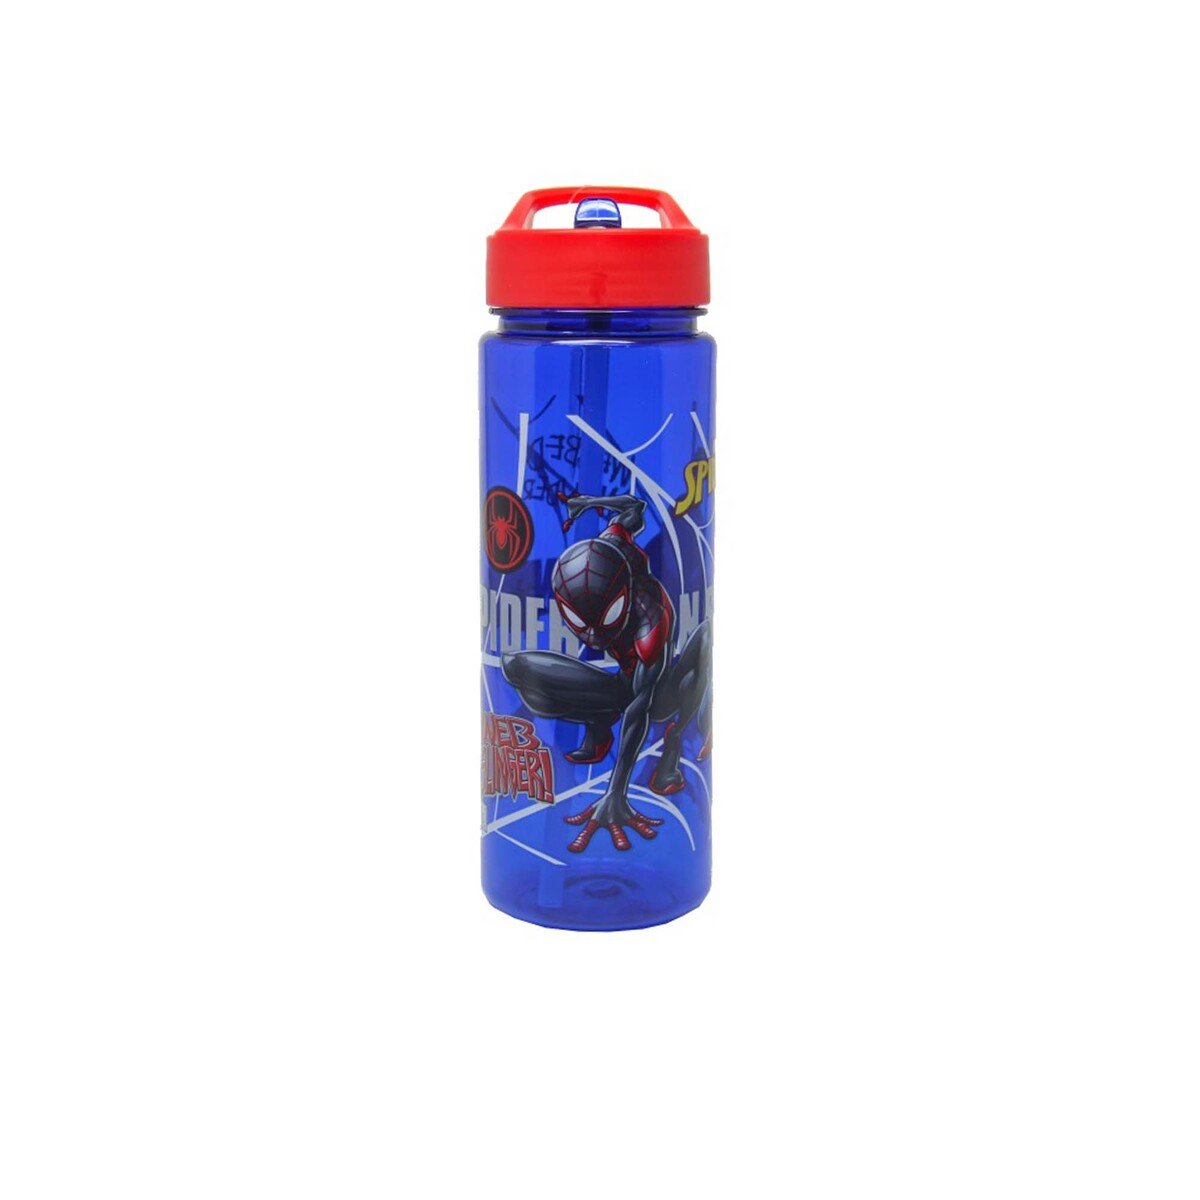 Spider-Man 650ml Water Bottle 41-0812